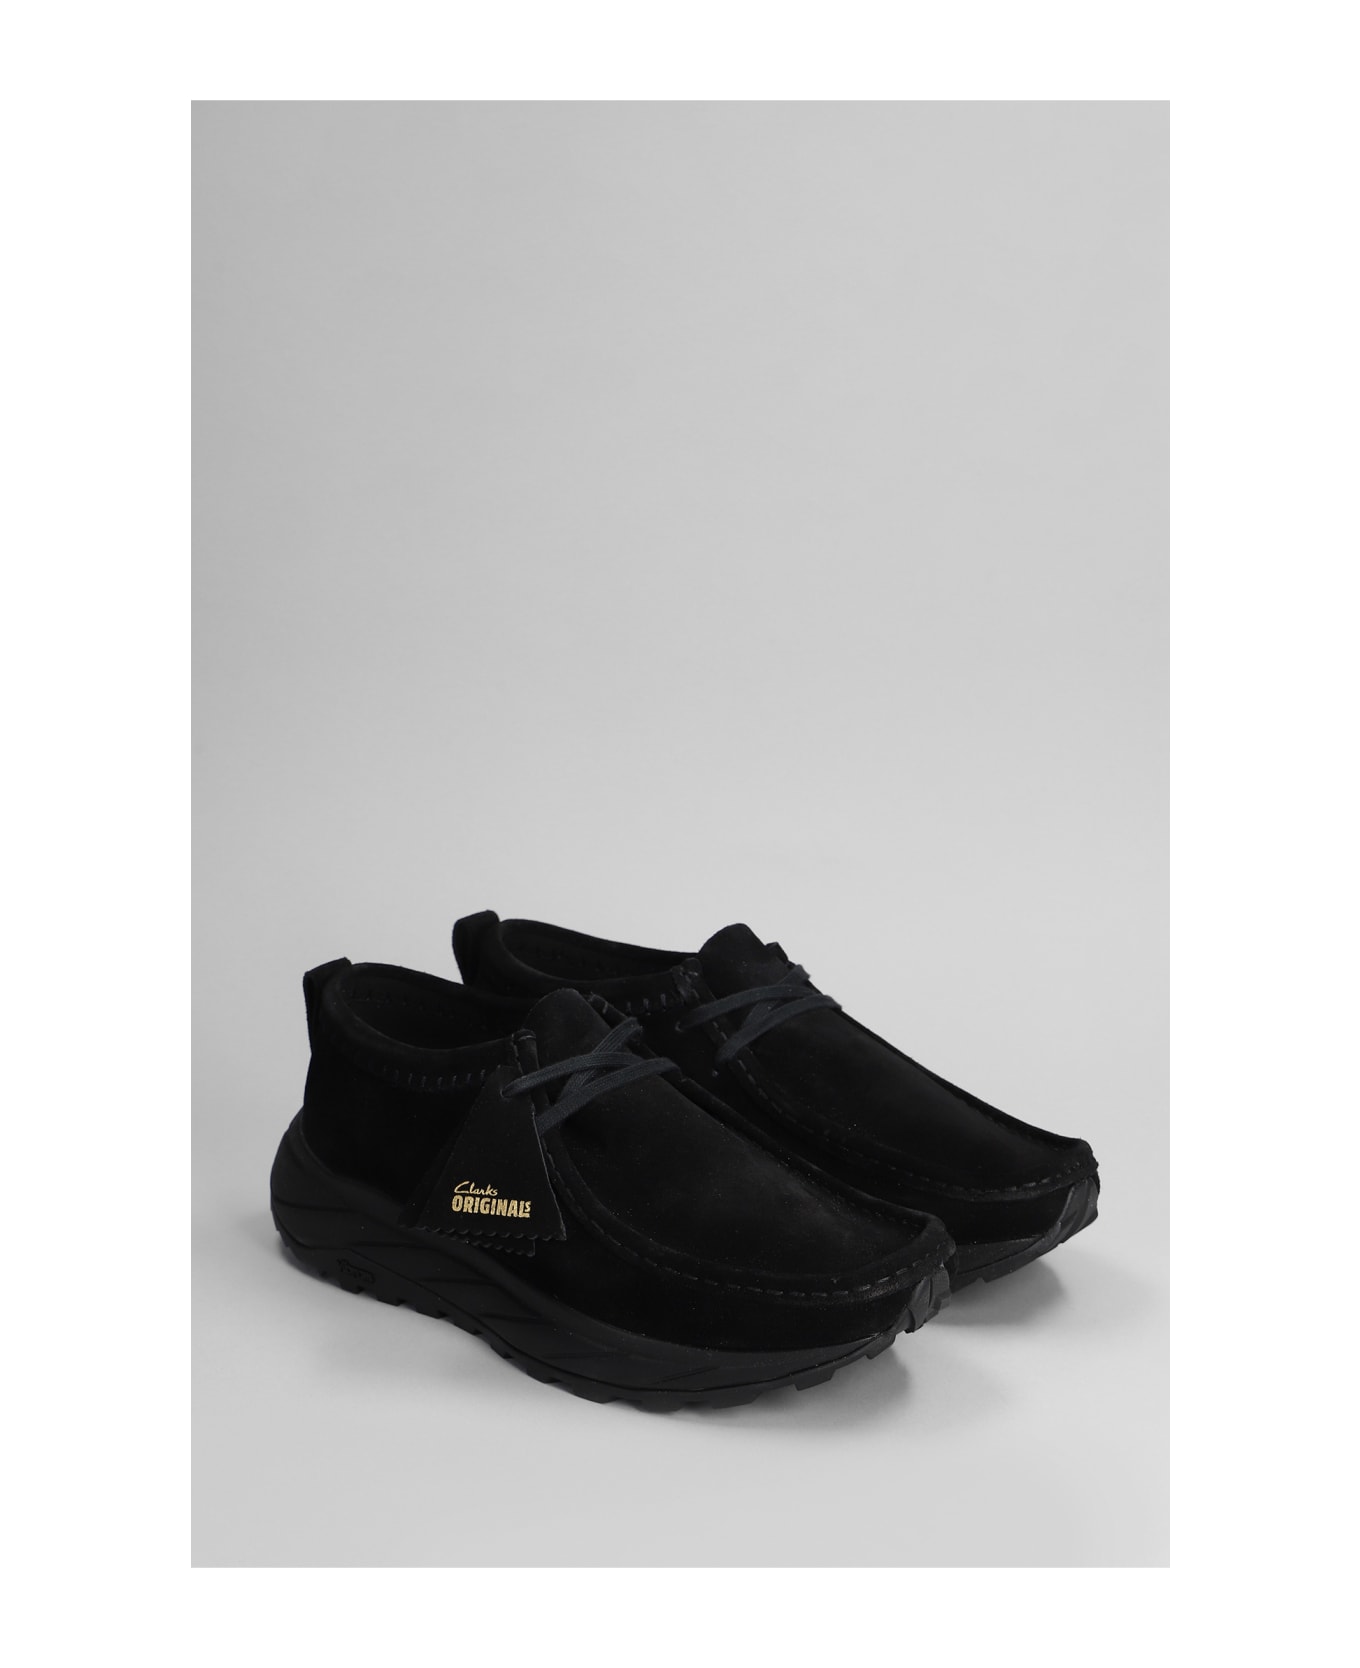 Clarks Walla Eden Lo Sneakers In Black Suede - black スニーカー